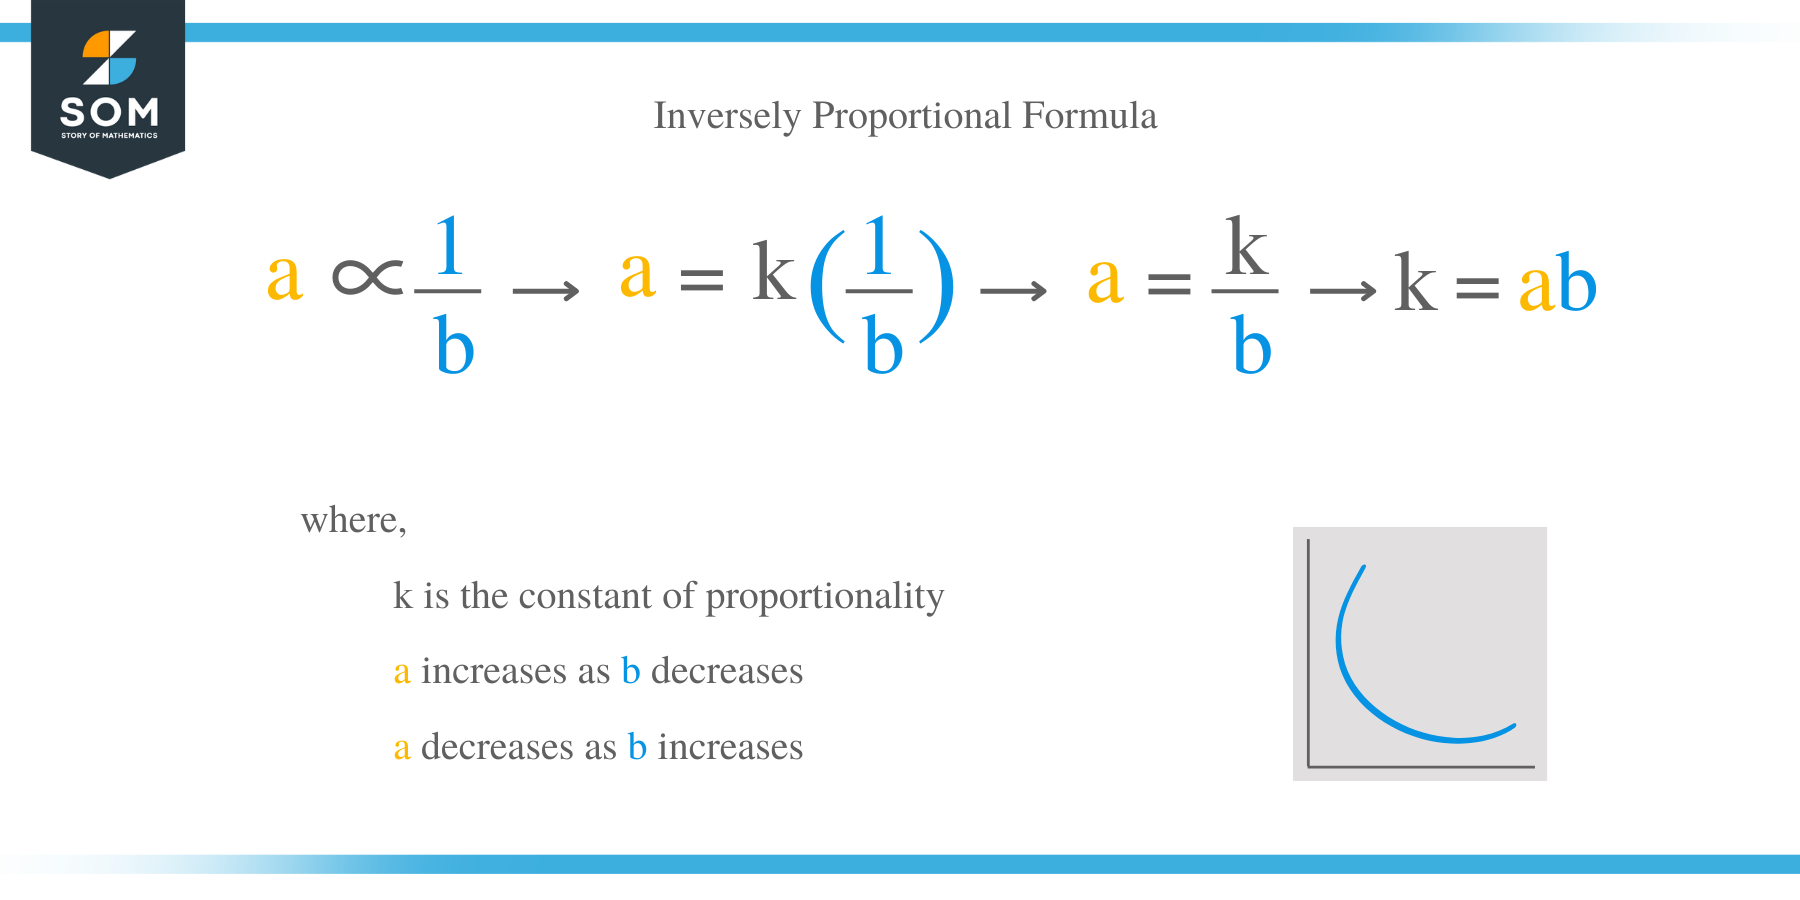 Indirectly Proportional Formula